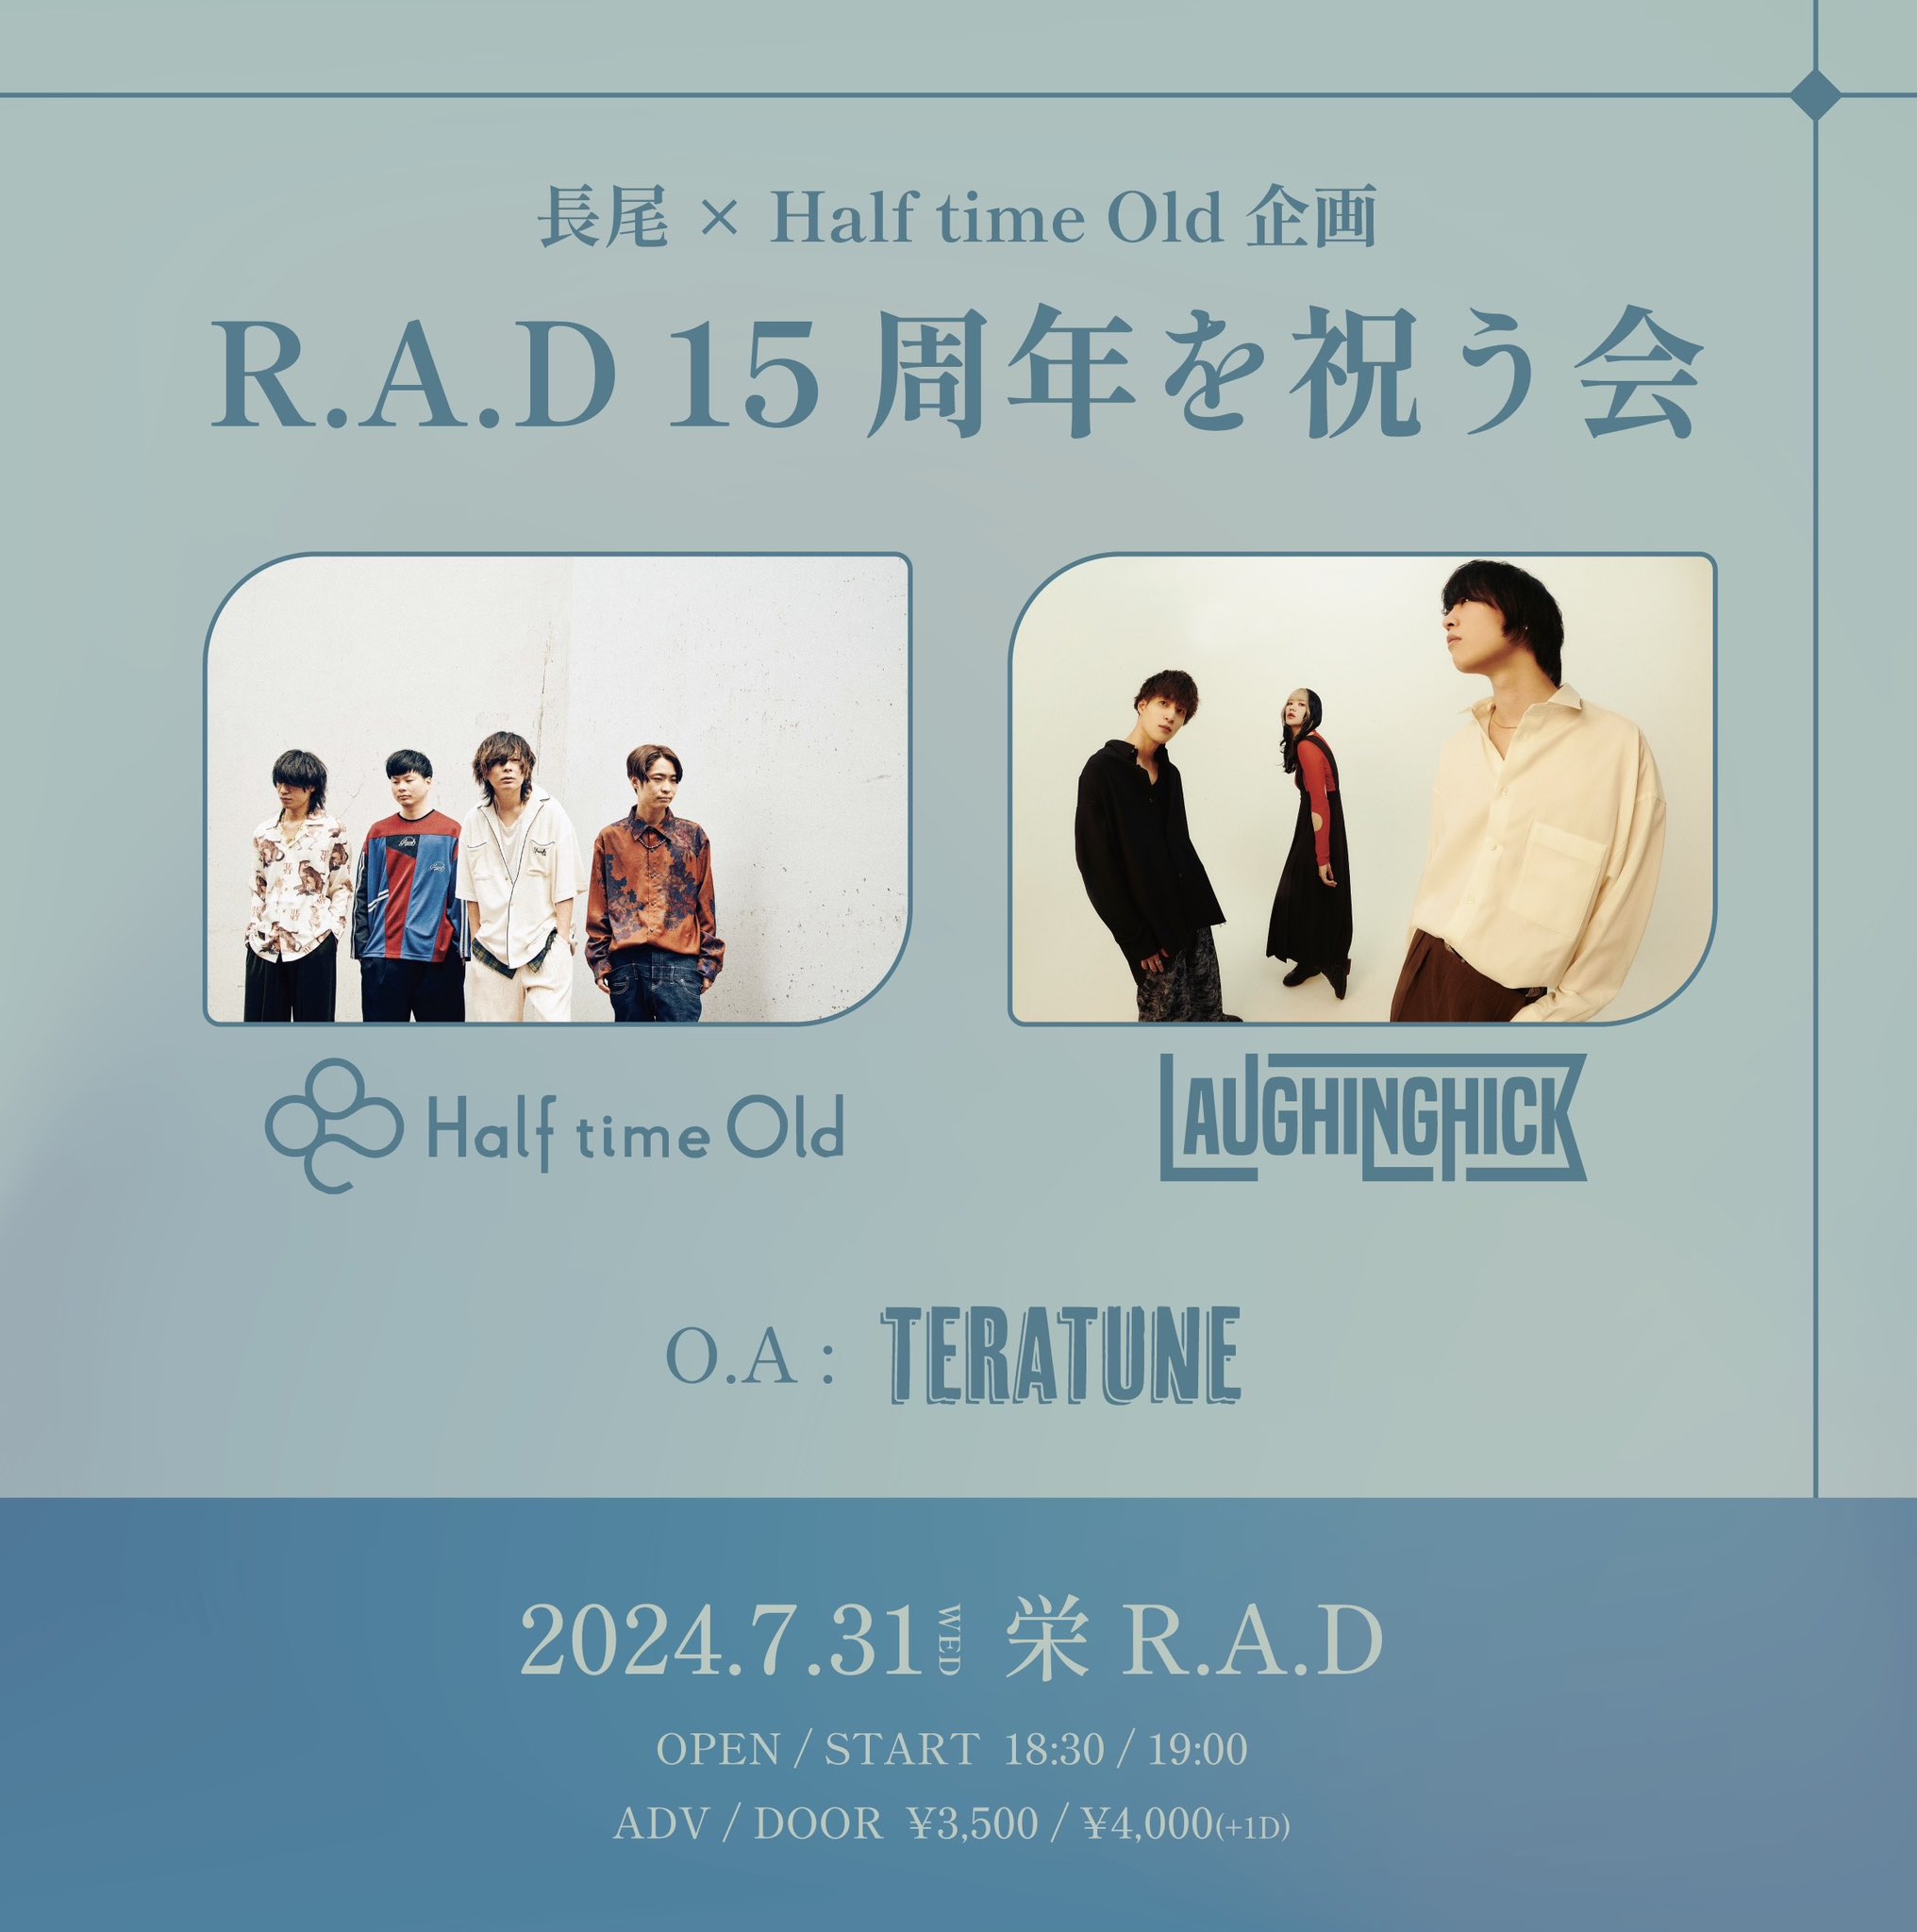 長尾 × Half time Old企画 R.A.D 15周年を祝う会